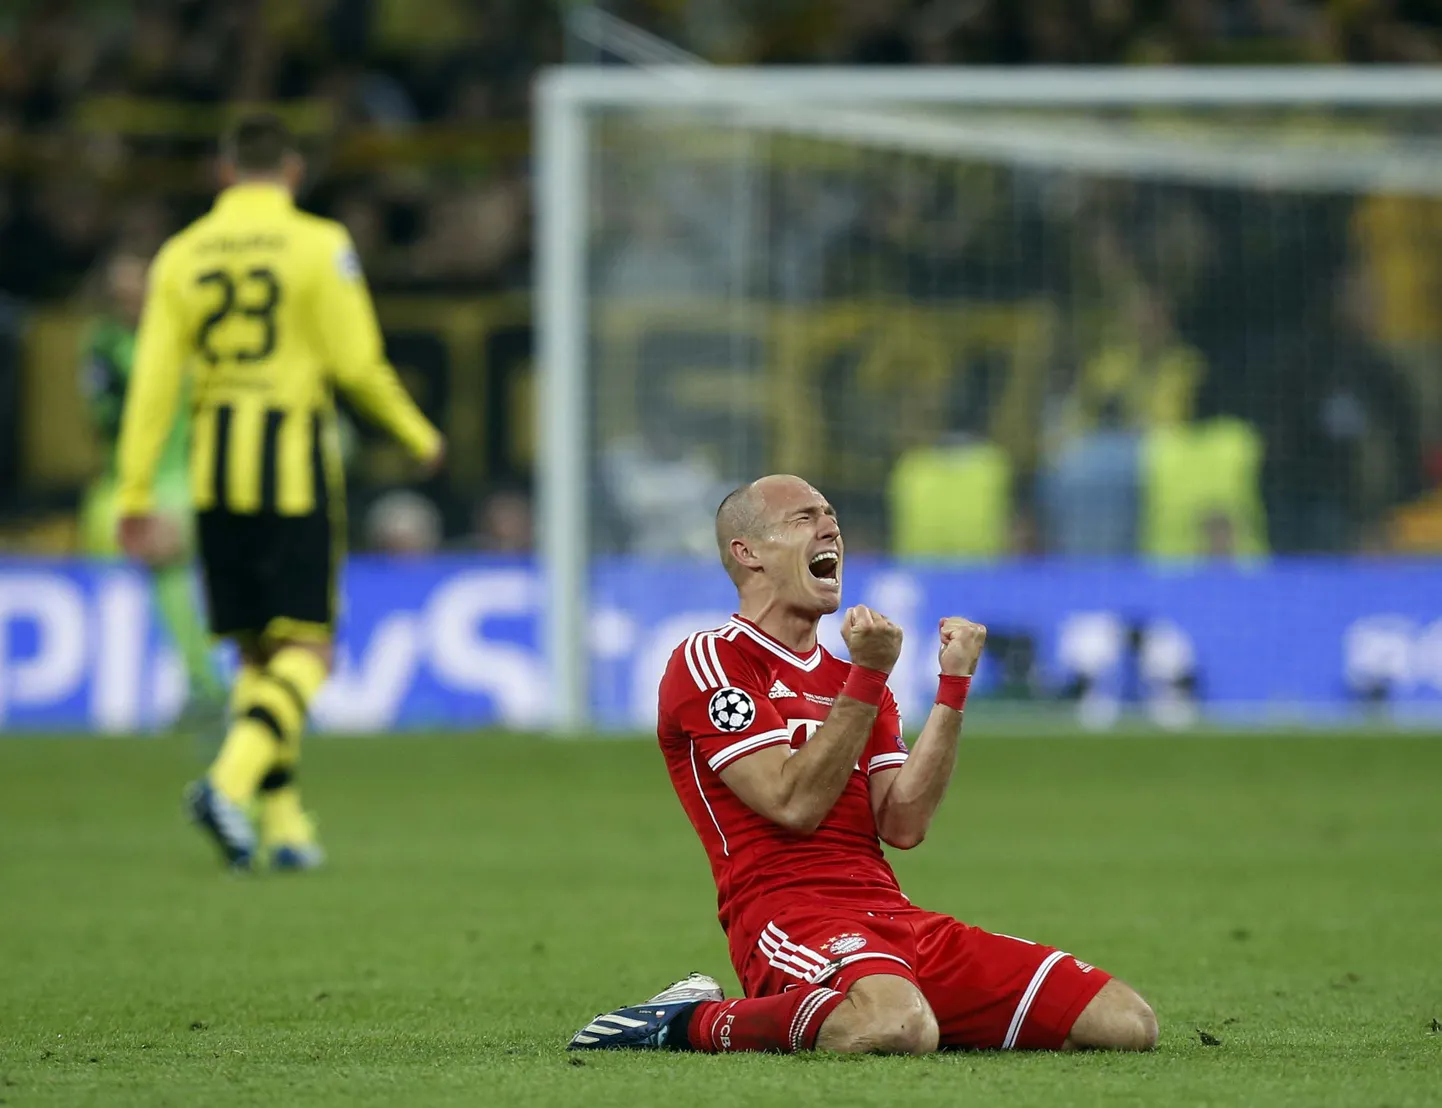 Enne laupäevast finaali räägiti Arjen Robbenist kui suurtel mängudel läbikukkujast. Mängus Dortmundiga tegi ta aga teisel poolajal kaks suurepärast sooritust ja juhtis Bayerni ihaldatud karikani.